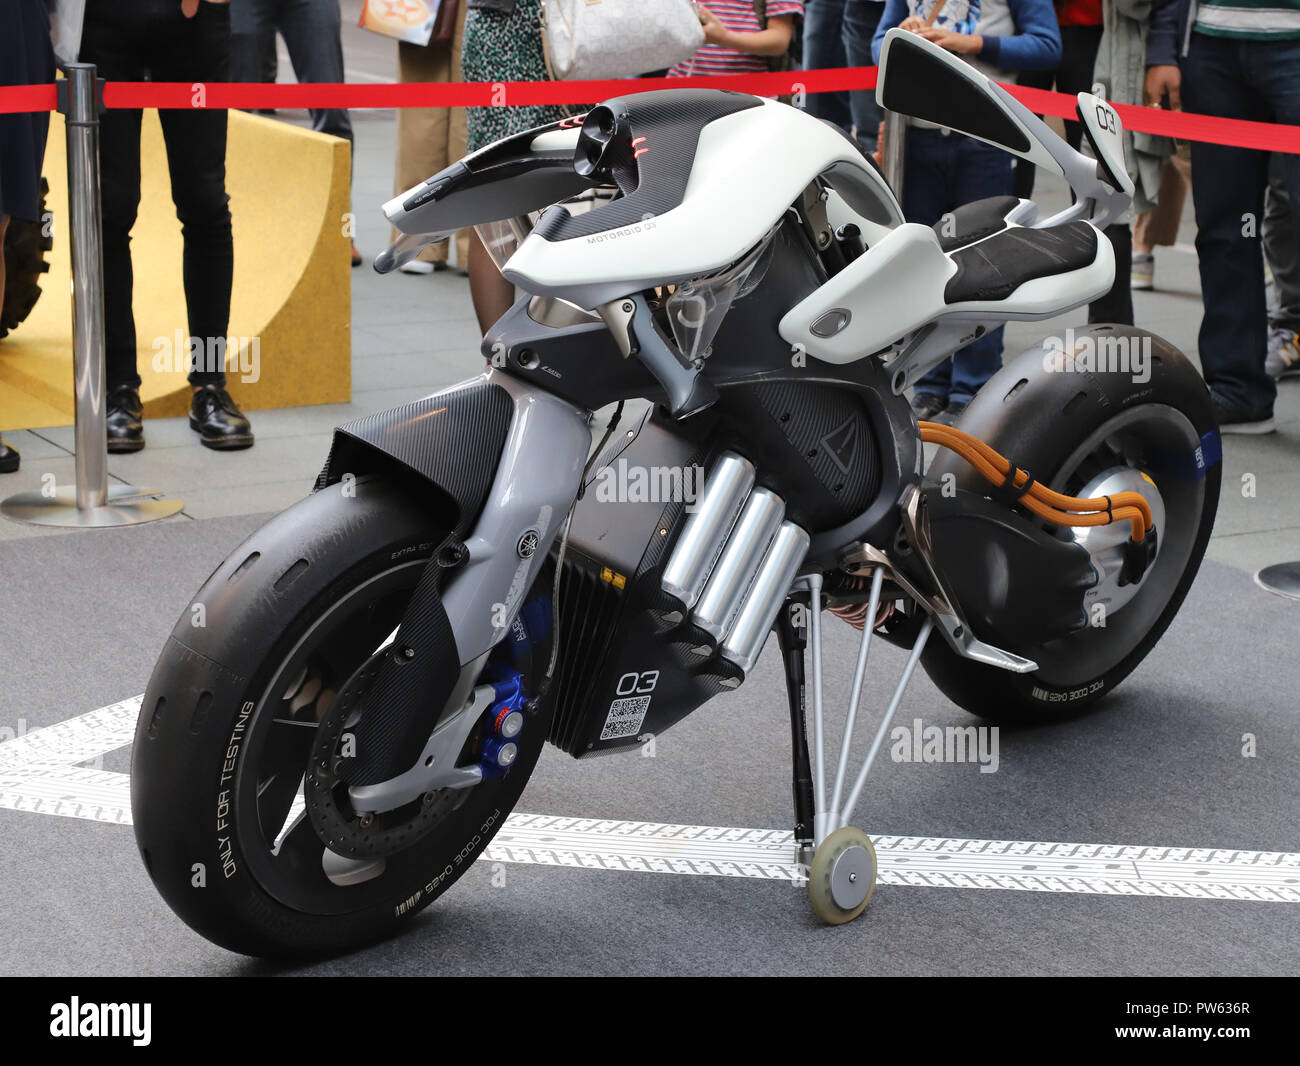 Tokyo, Japon - moto Yamaha Moteur du géant japonais affiche l'équilibre et  l'auto-moto robot OTOROiD «' à Tokyo le samedi, Octobre 13, 2018.  Instrument de musique japonais Yamaha Corporation géante et Yamaha